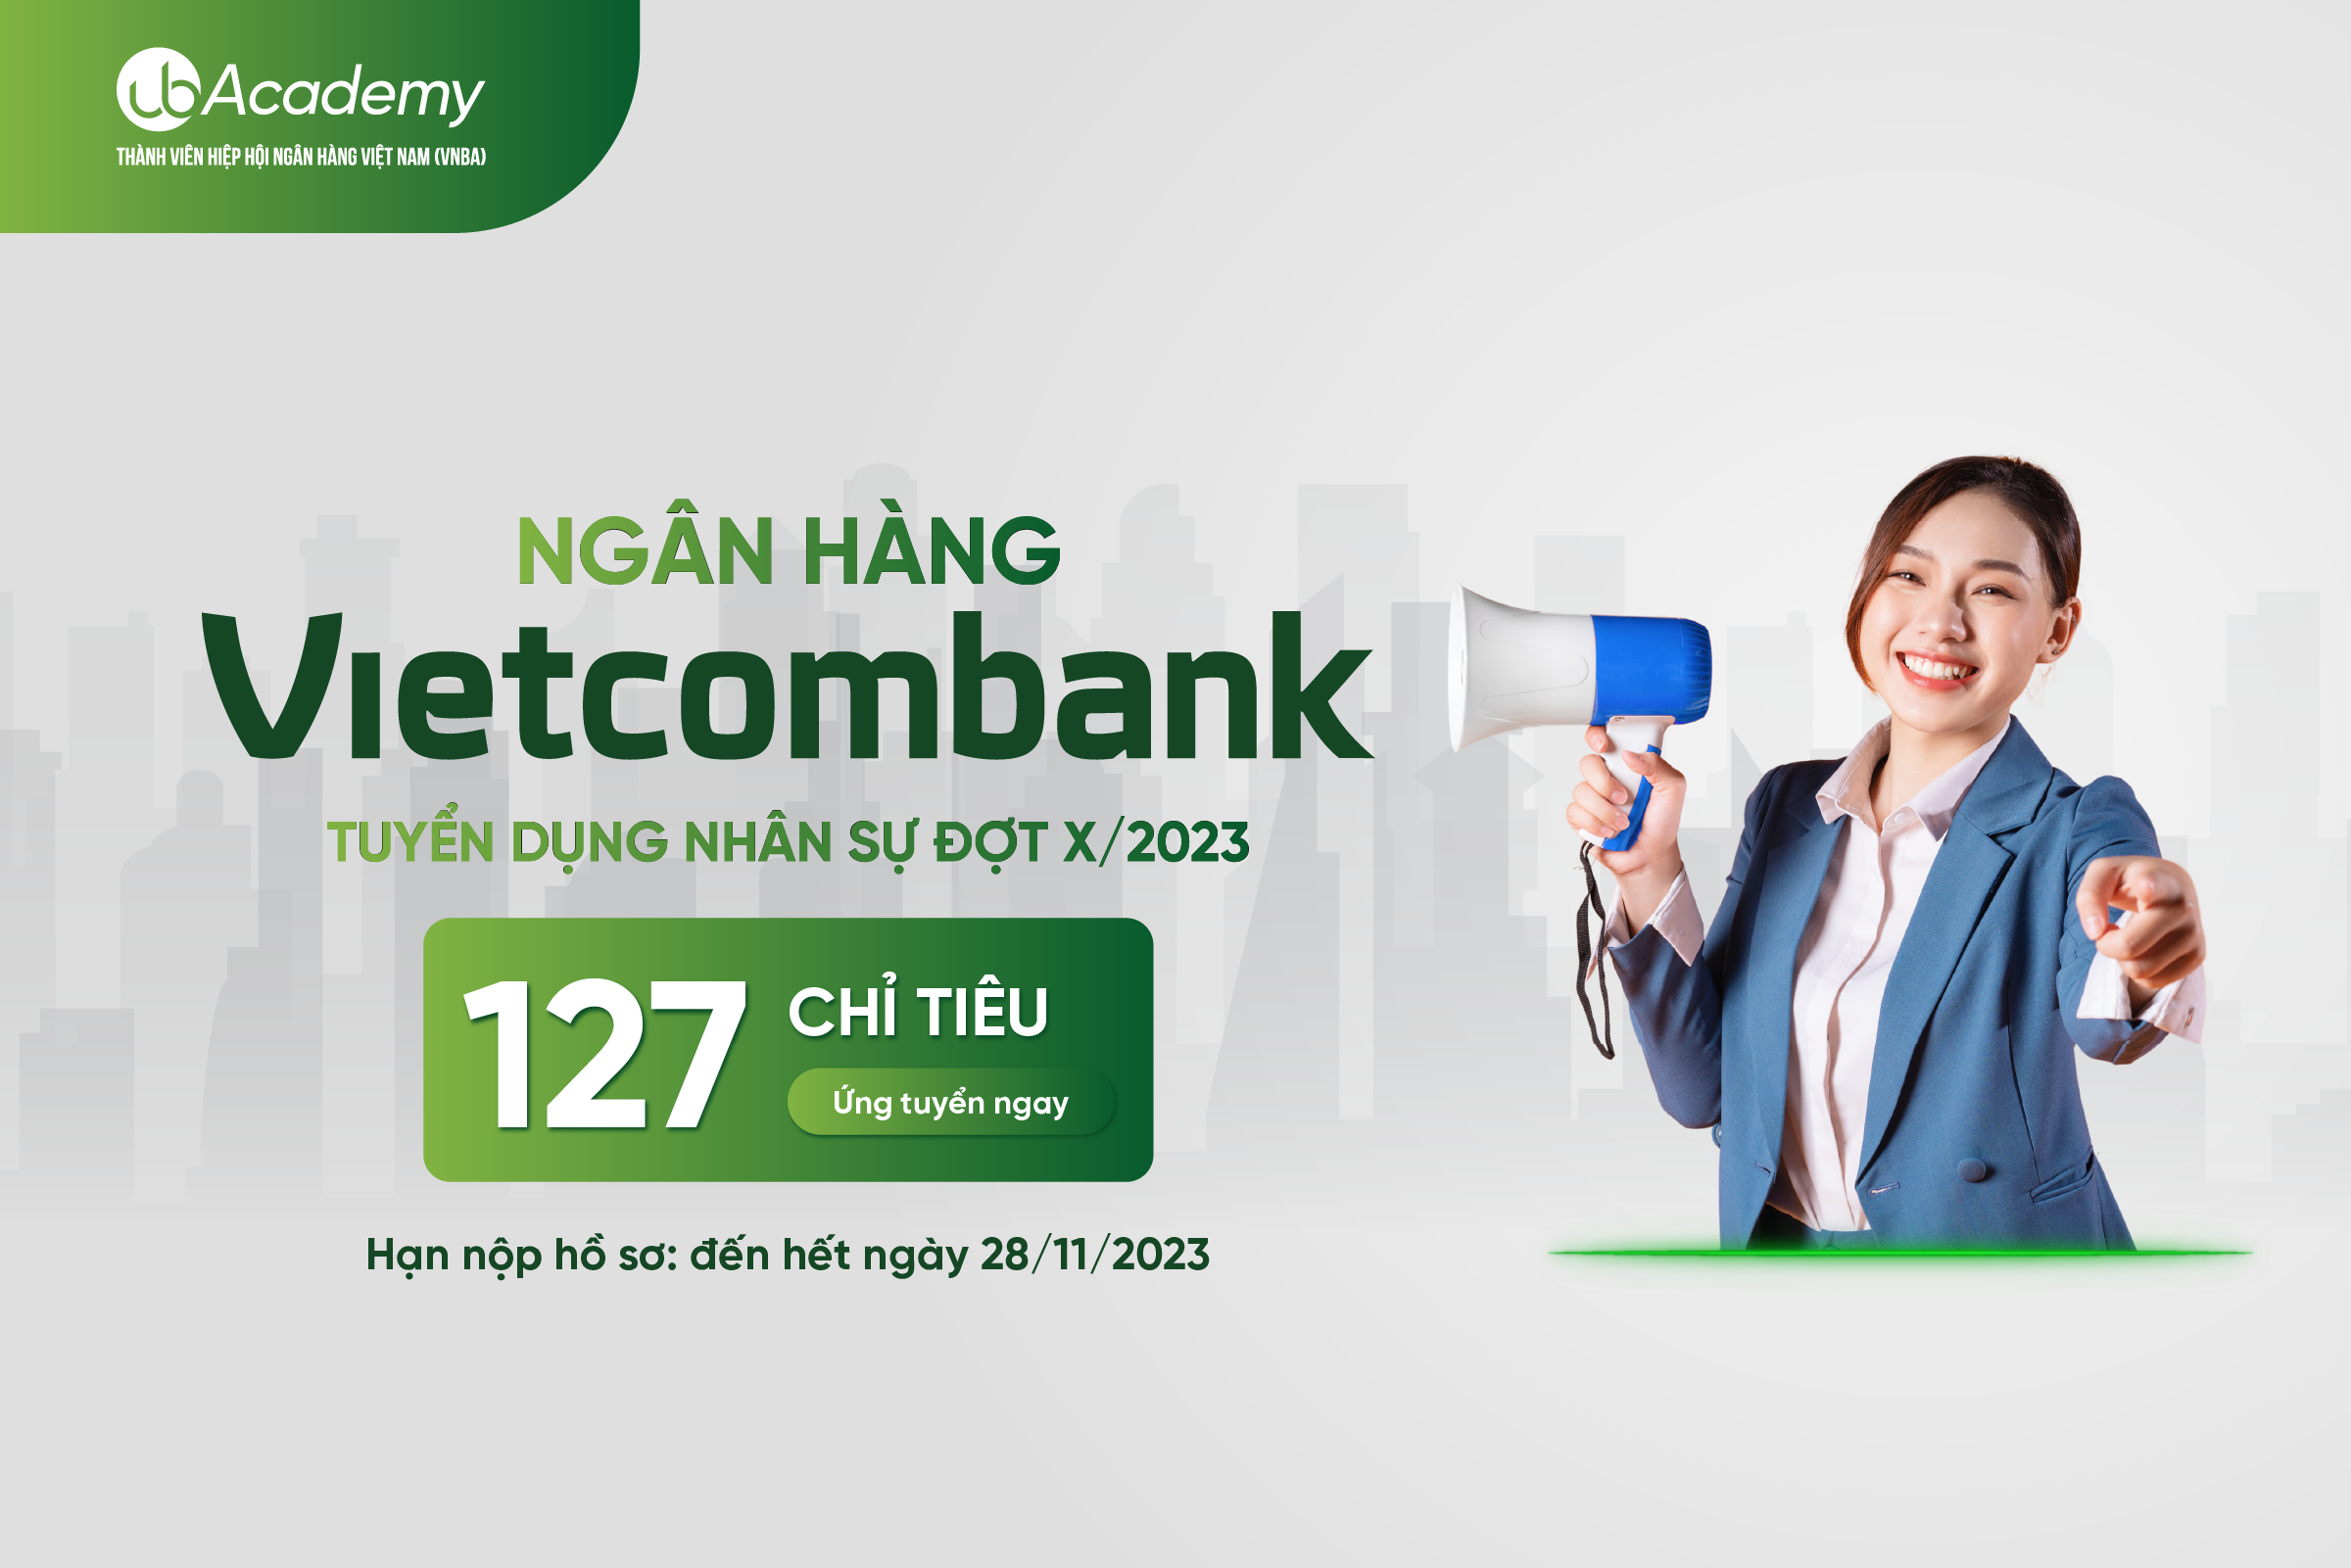 Ngân hàng Vietcombank tuyển dụng đợt X/2023